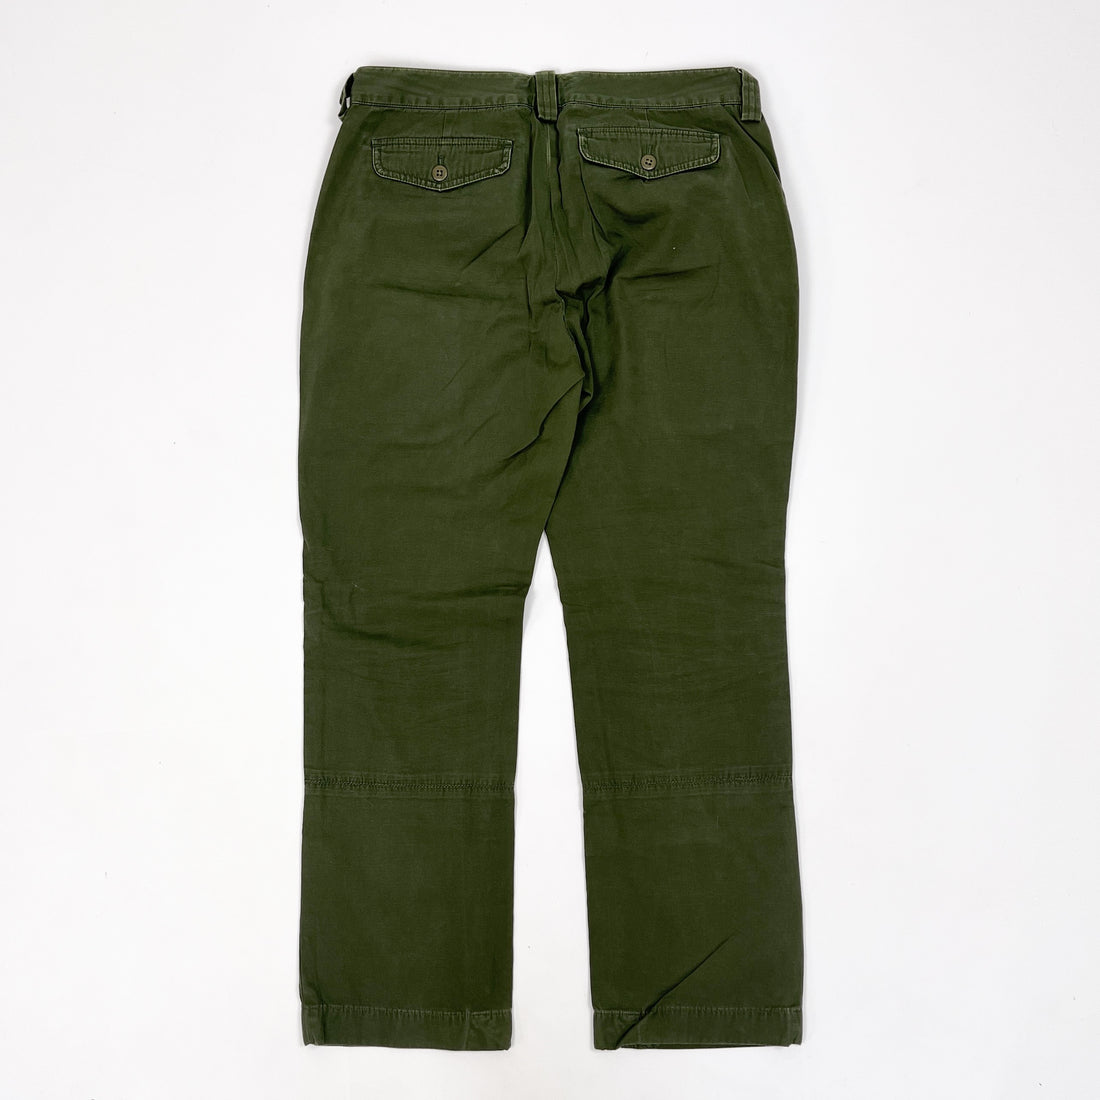 Ralph Lauren Military Green Cargo Pants 1990's